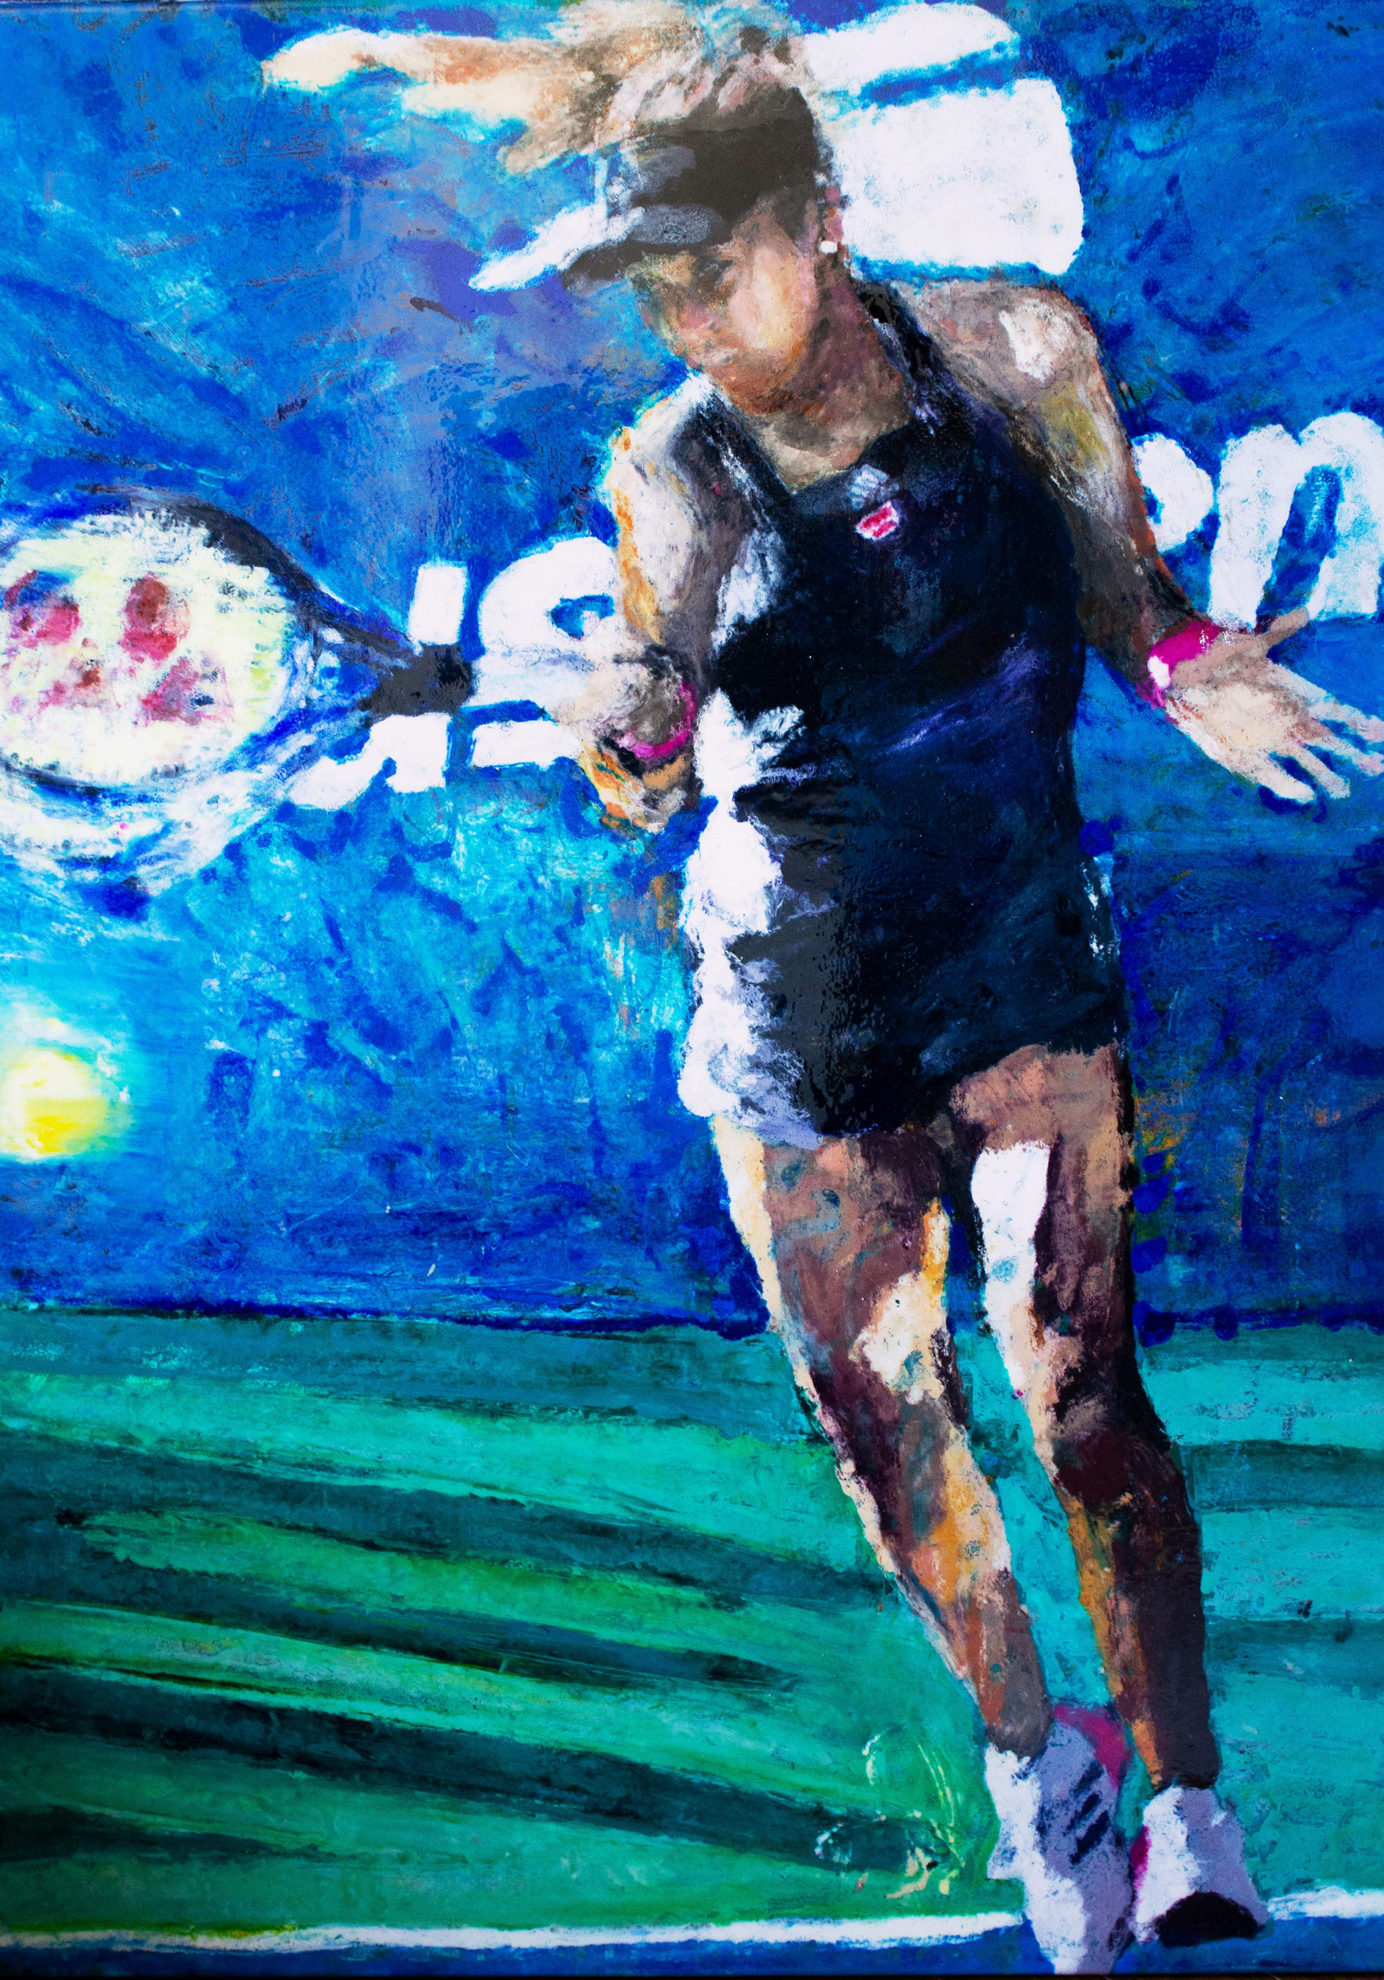 Naomi Osaka, 2018 US Open Champion